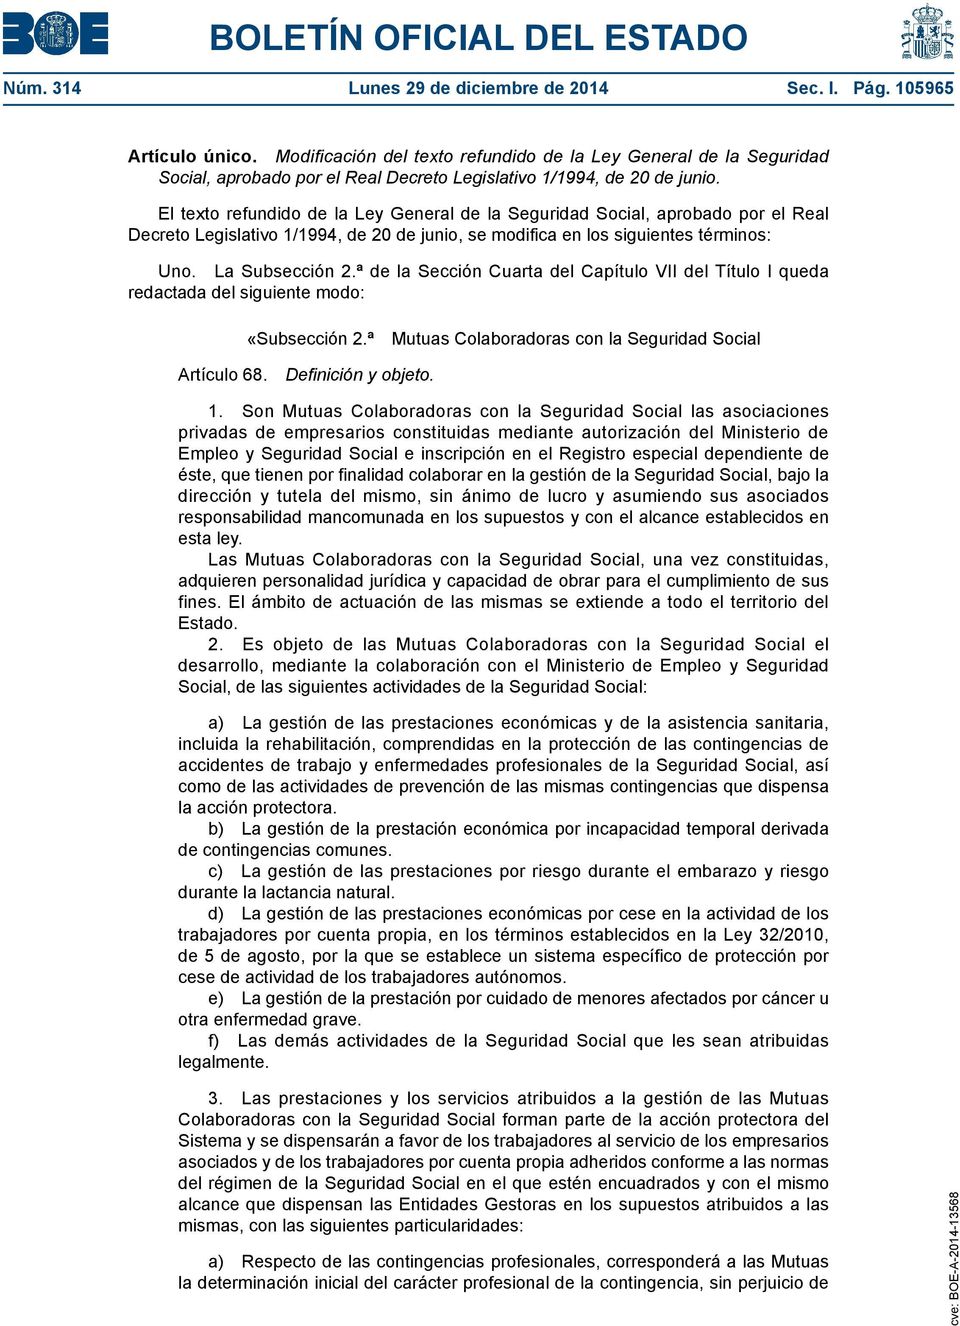 El texto refundido de la Ley General de la Seguridad Social, aprobado por el Real Decreto Legislativo 1/1994, de 20 de junio, se modifica en los siguientes términos: Uno. La Subsección 2.